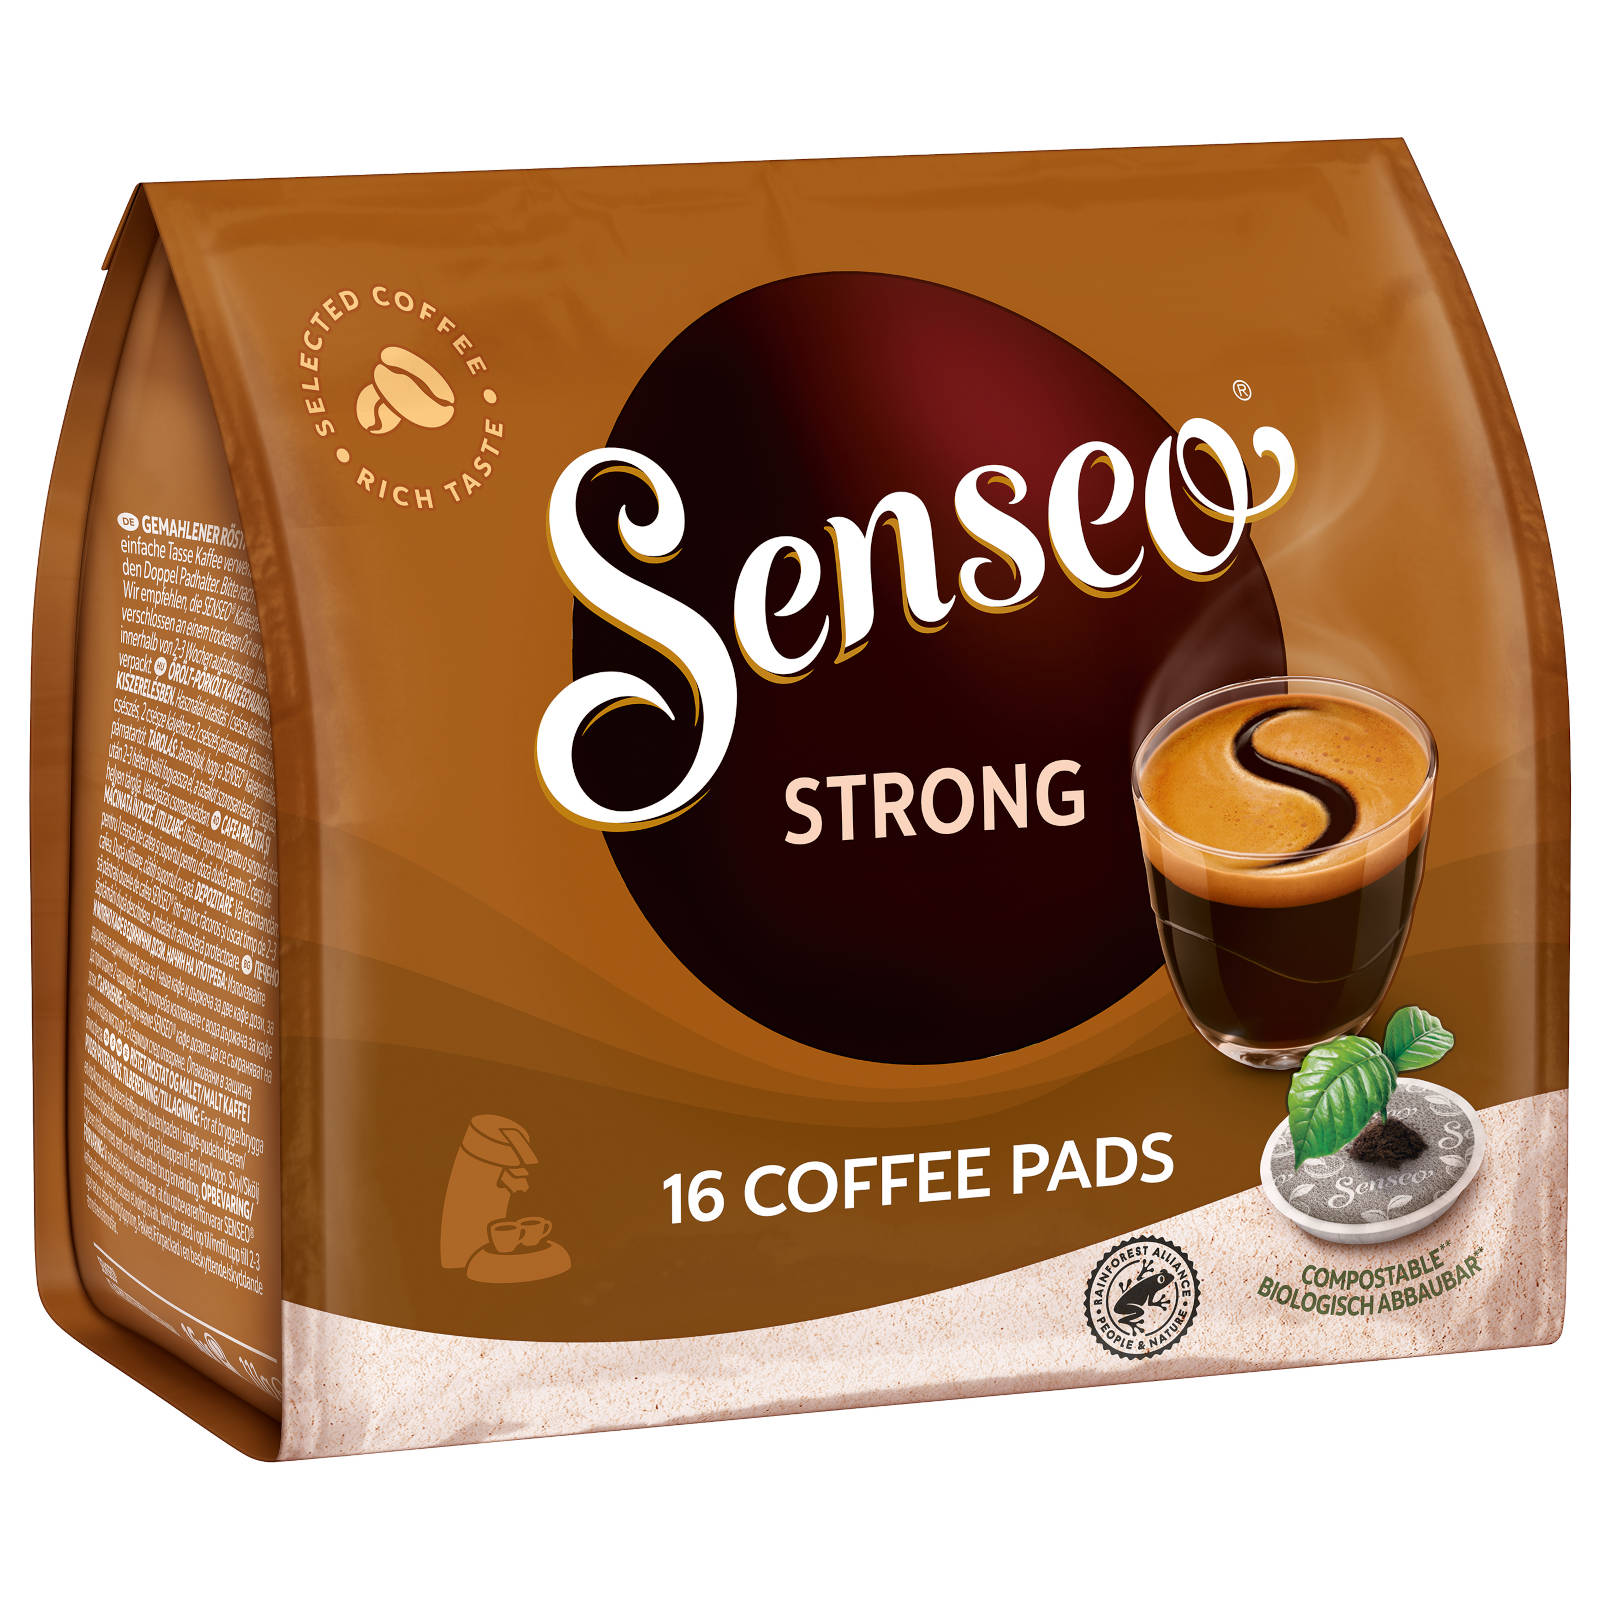 (Senseo Padmaschine) x 10 Kaffeepads Getränke 16 SENSEO Strong